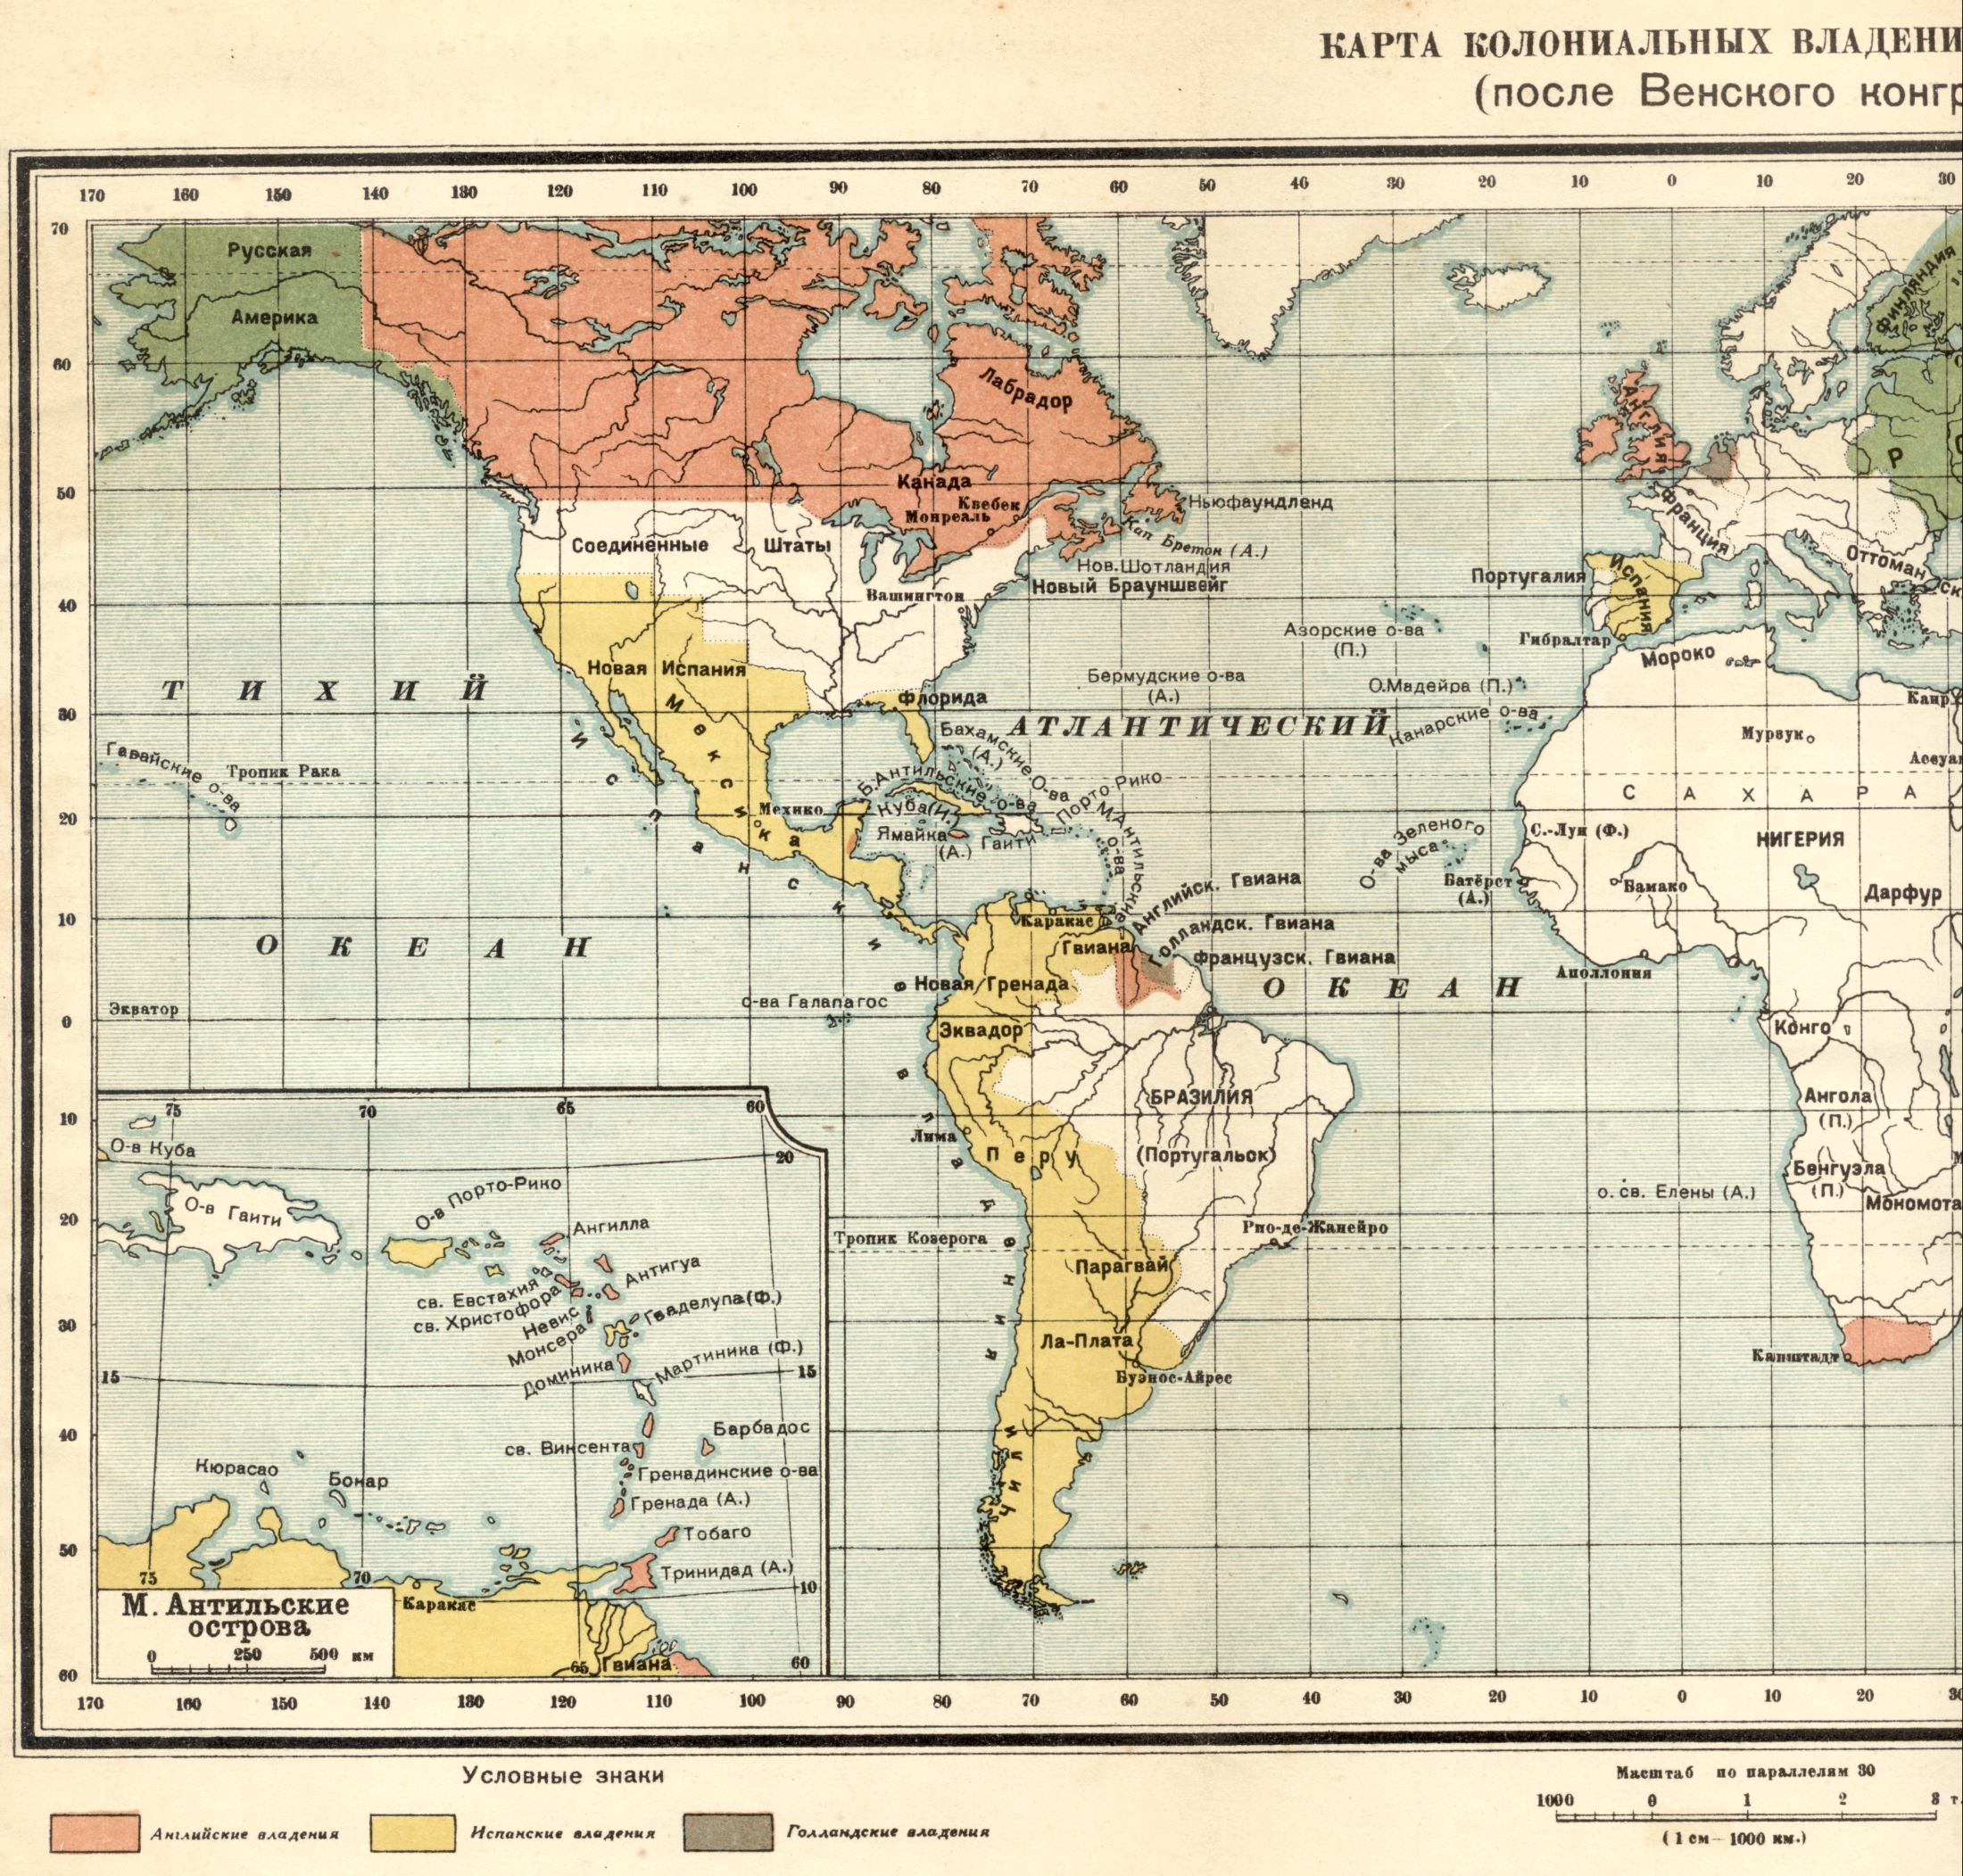 1815 року. Політична карта світу - карта колоніальних володінь в 1815 році після Віденського конгресу. Завантажити безкоштовно докладну карту